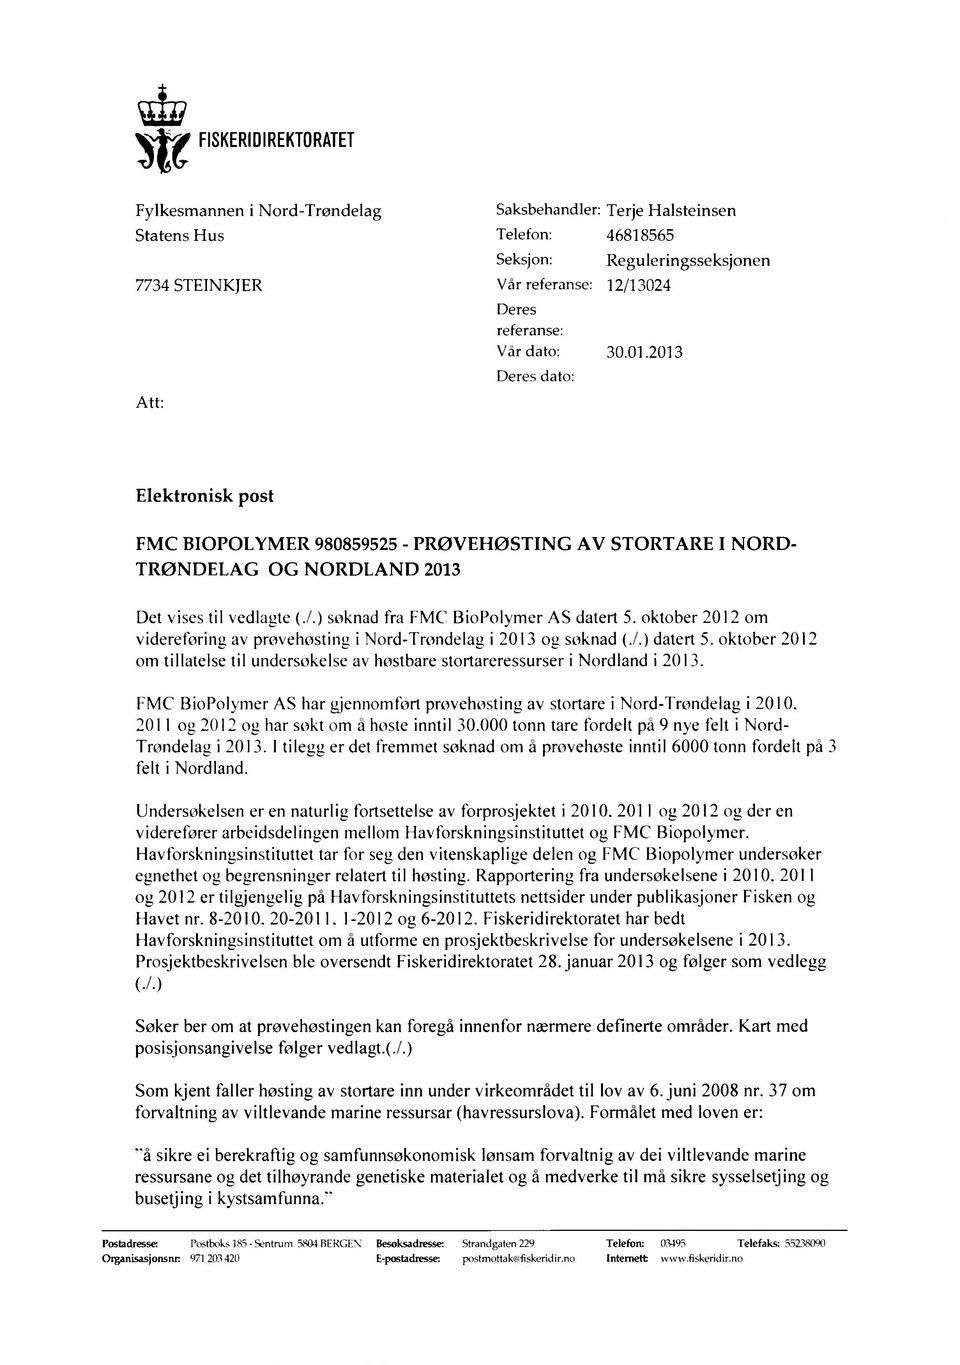 ) soknad fra FMC BioPolvmer AS datert 5. oktober 2012 om videreforing av provehosting i Nord-Trondelag i 2013 og soknad (.1.) datert 5.